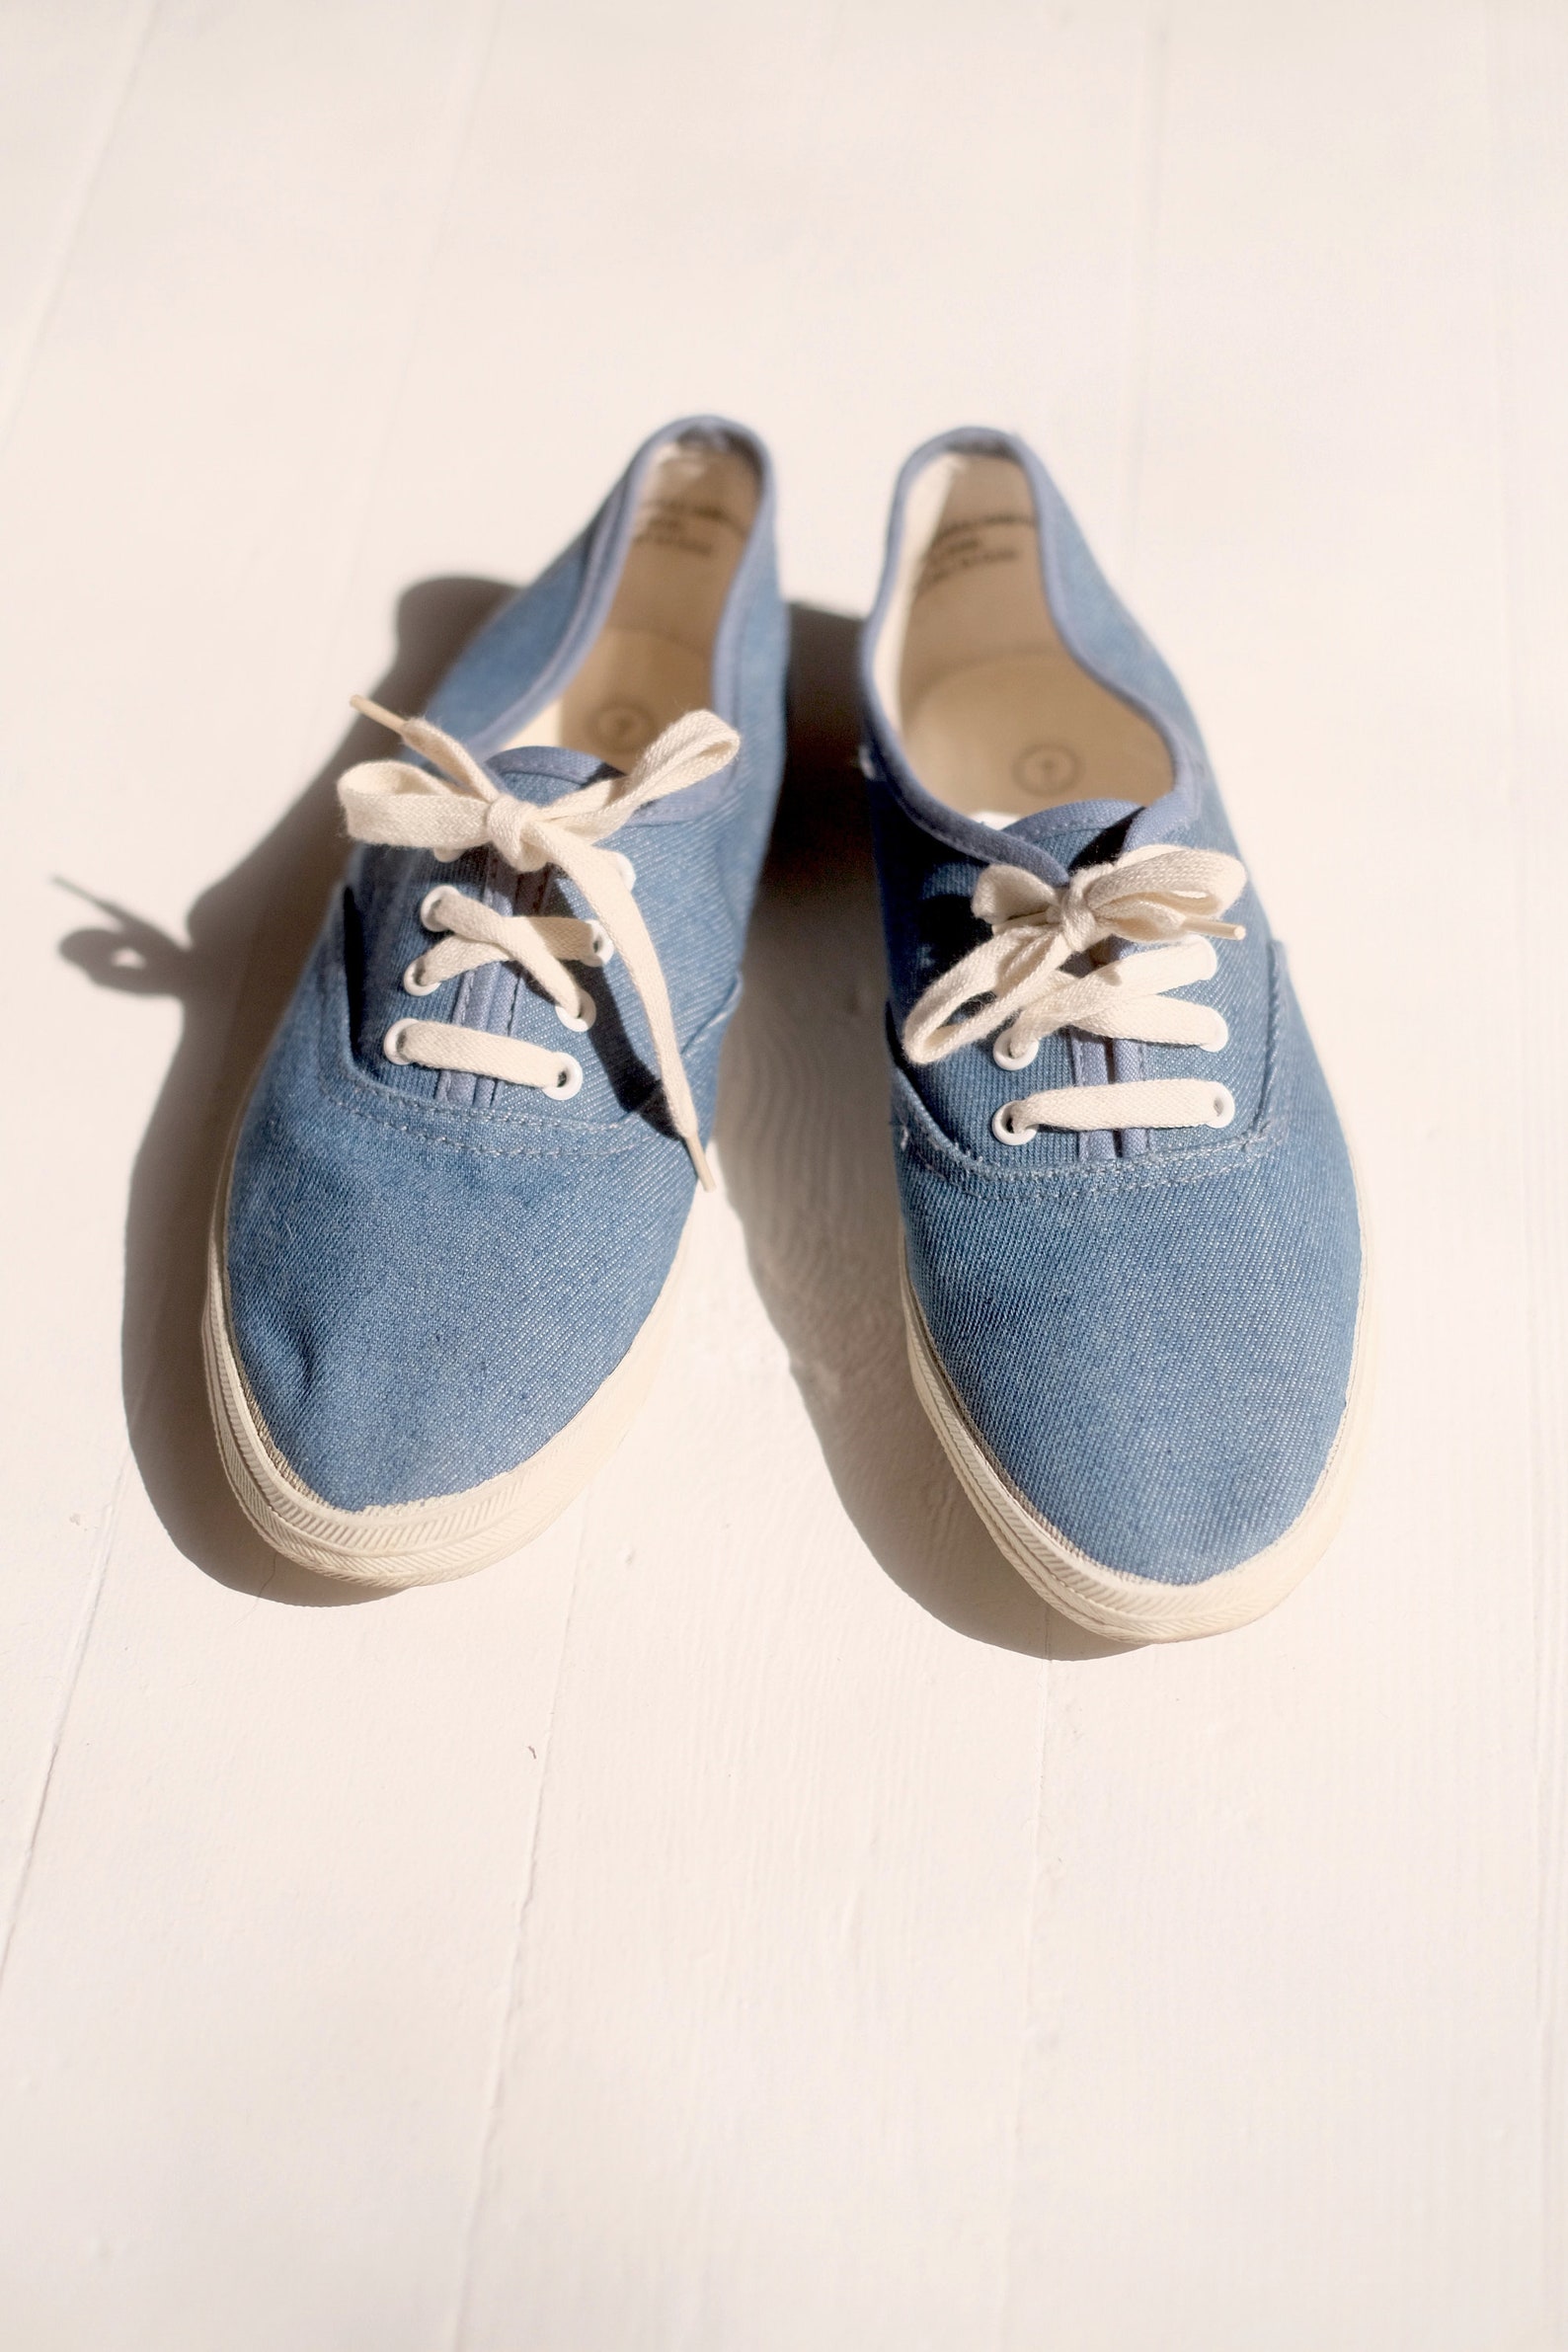 Denim Tennis Shoes Sz 7 // Vintage Jean Basic Cotton Lace Up | Etsy